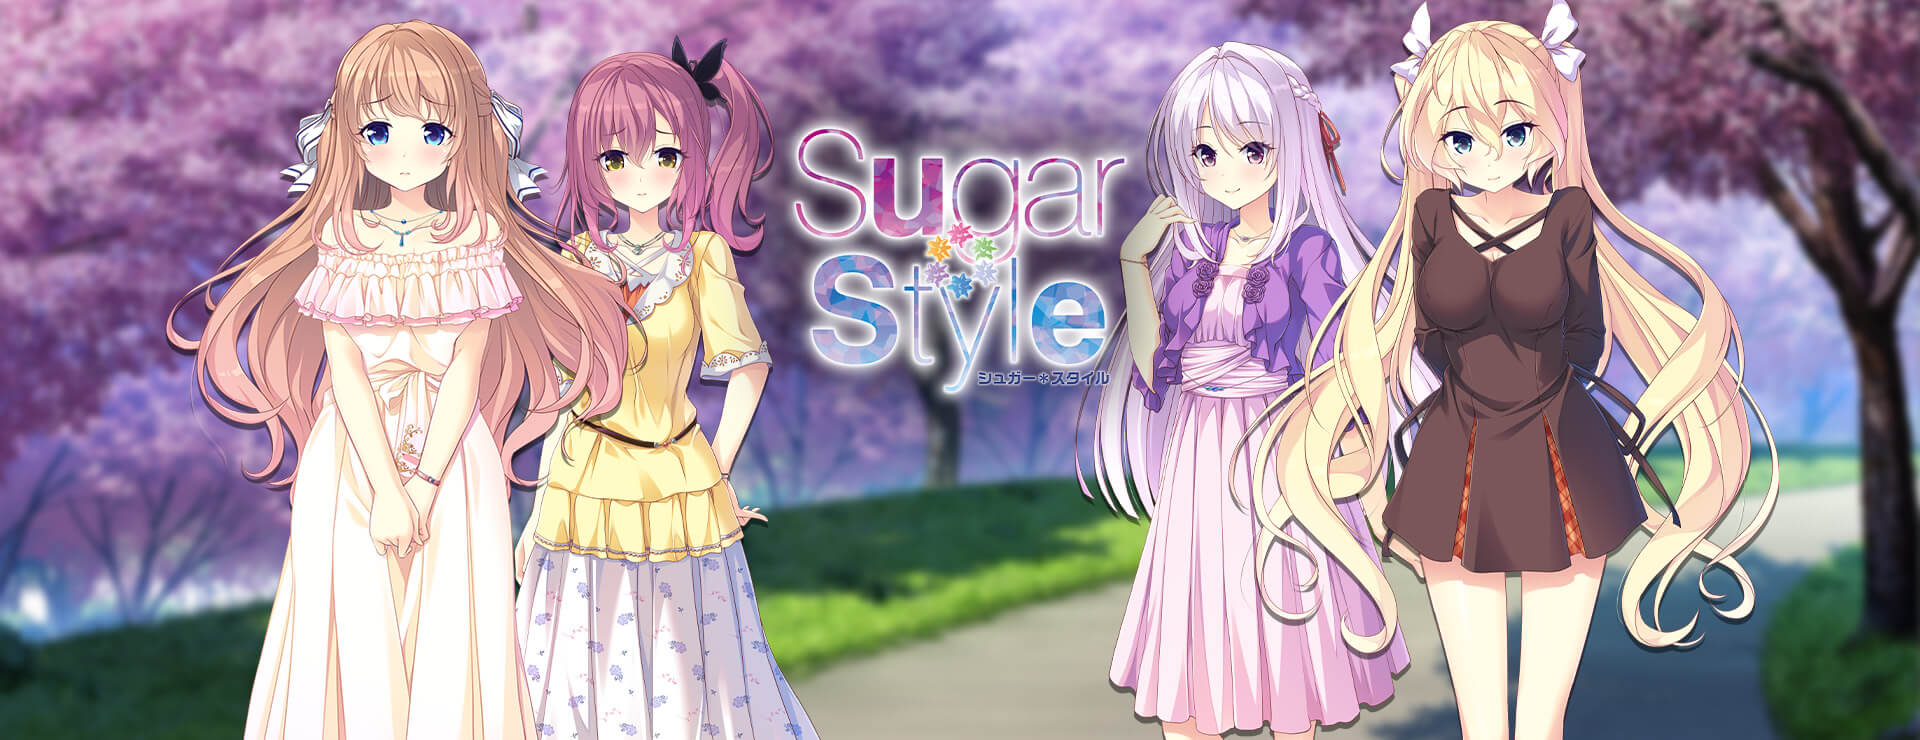 Sugar * Style - Casual Juego